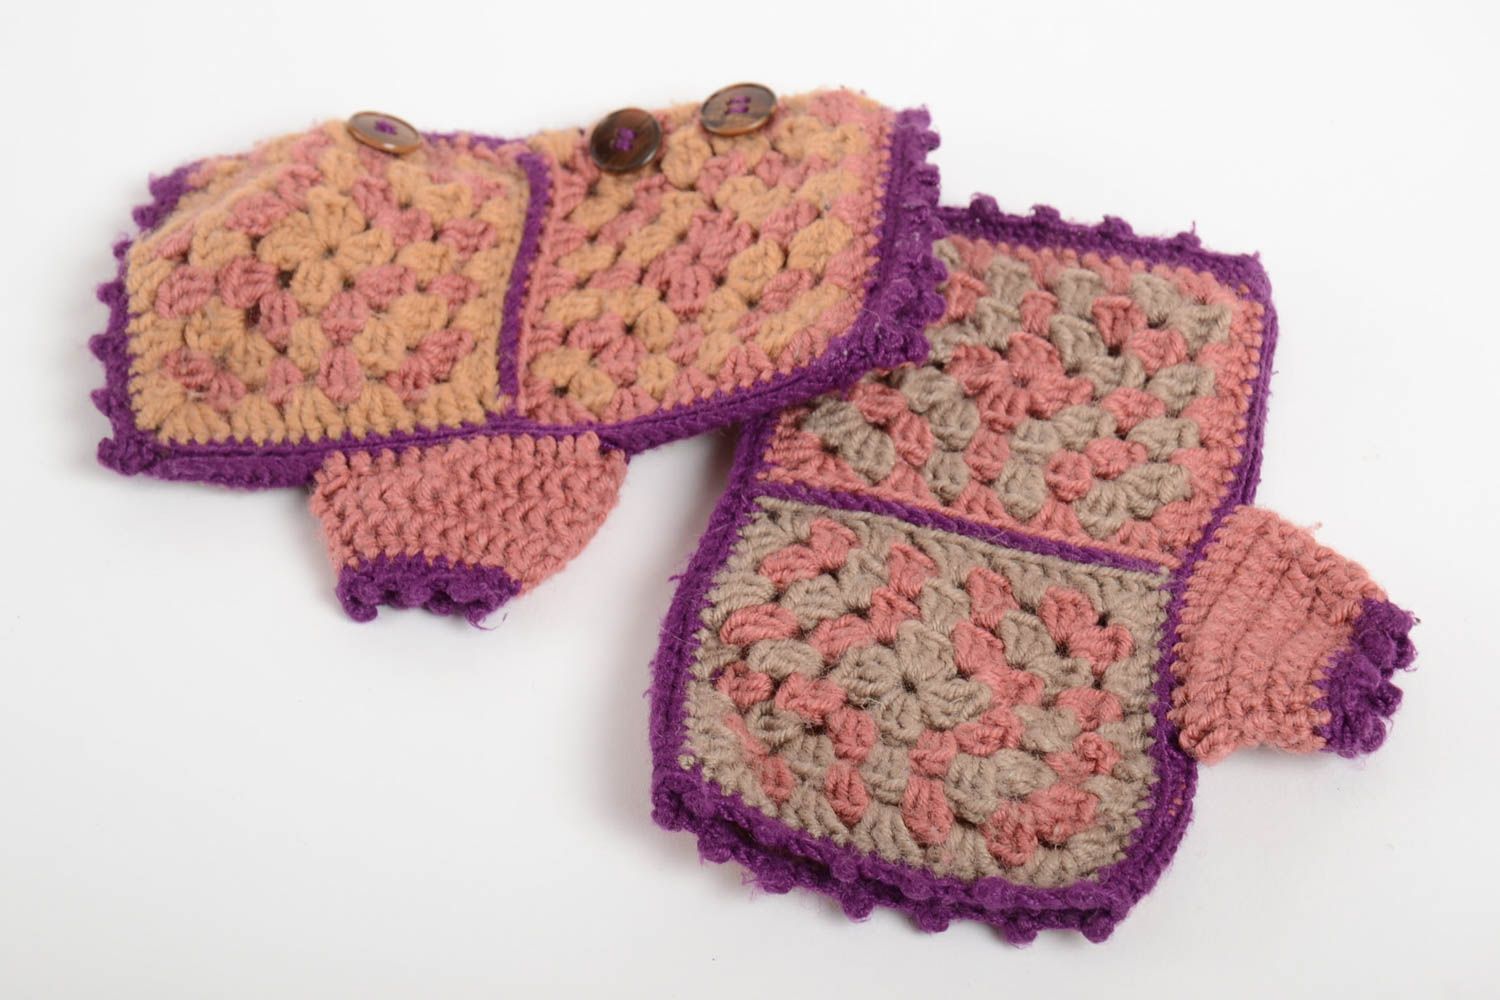 Beautiful handmade crochet mittens crochet ideas winter accessories gift ideas photo 4